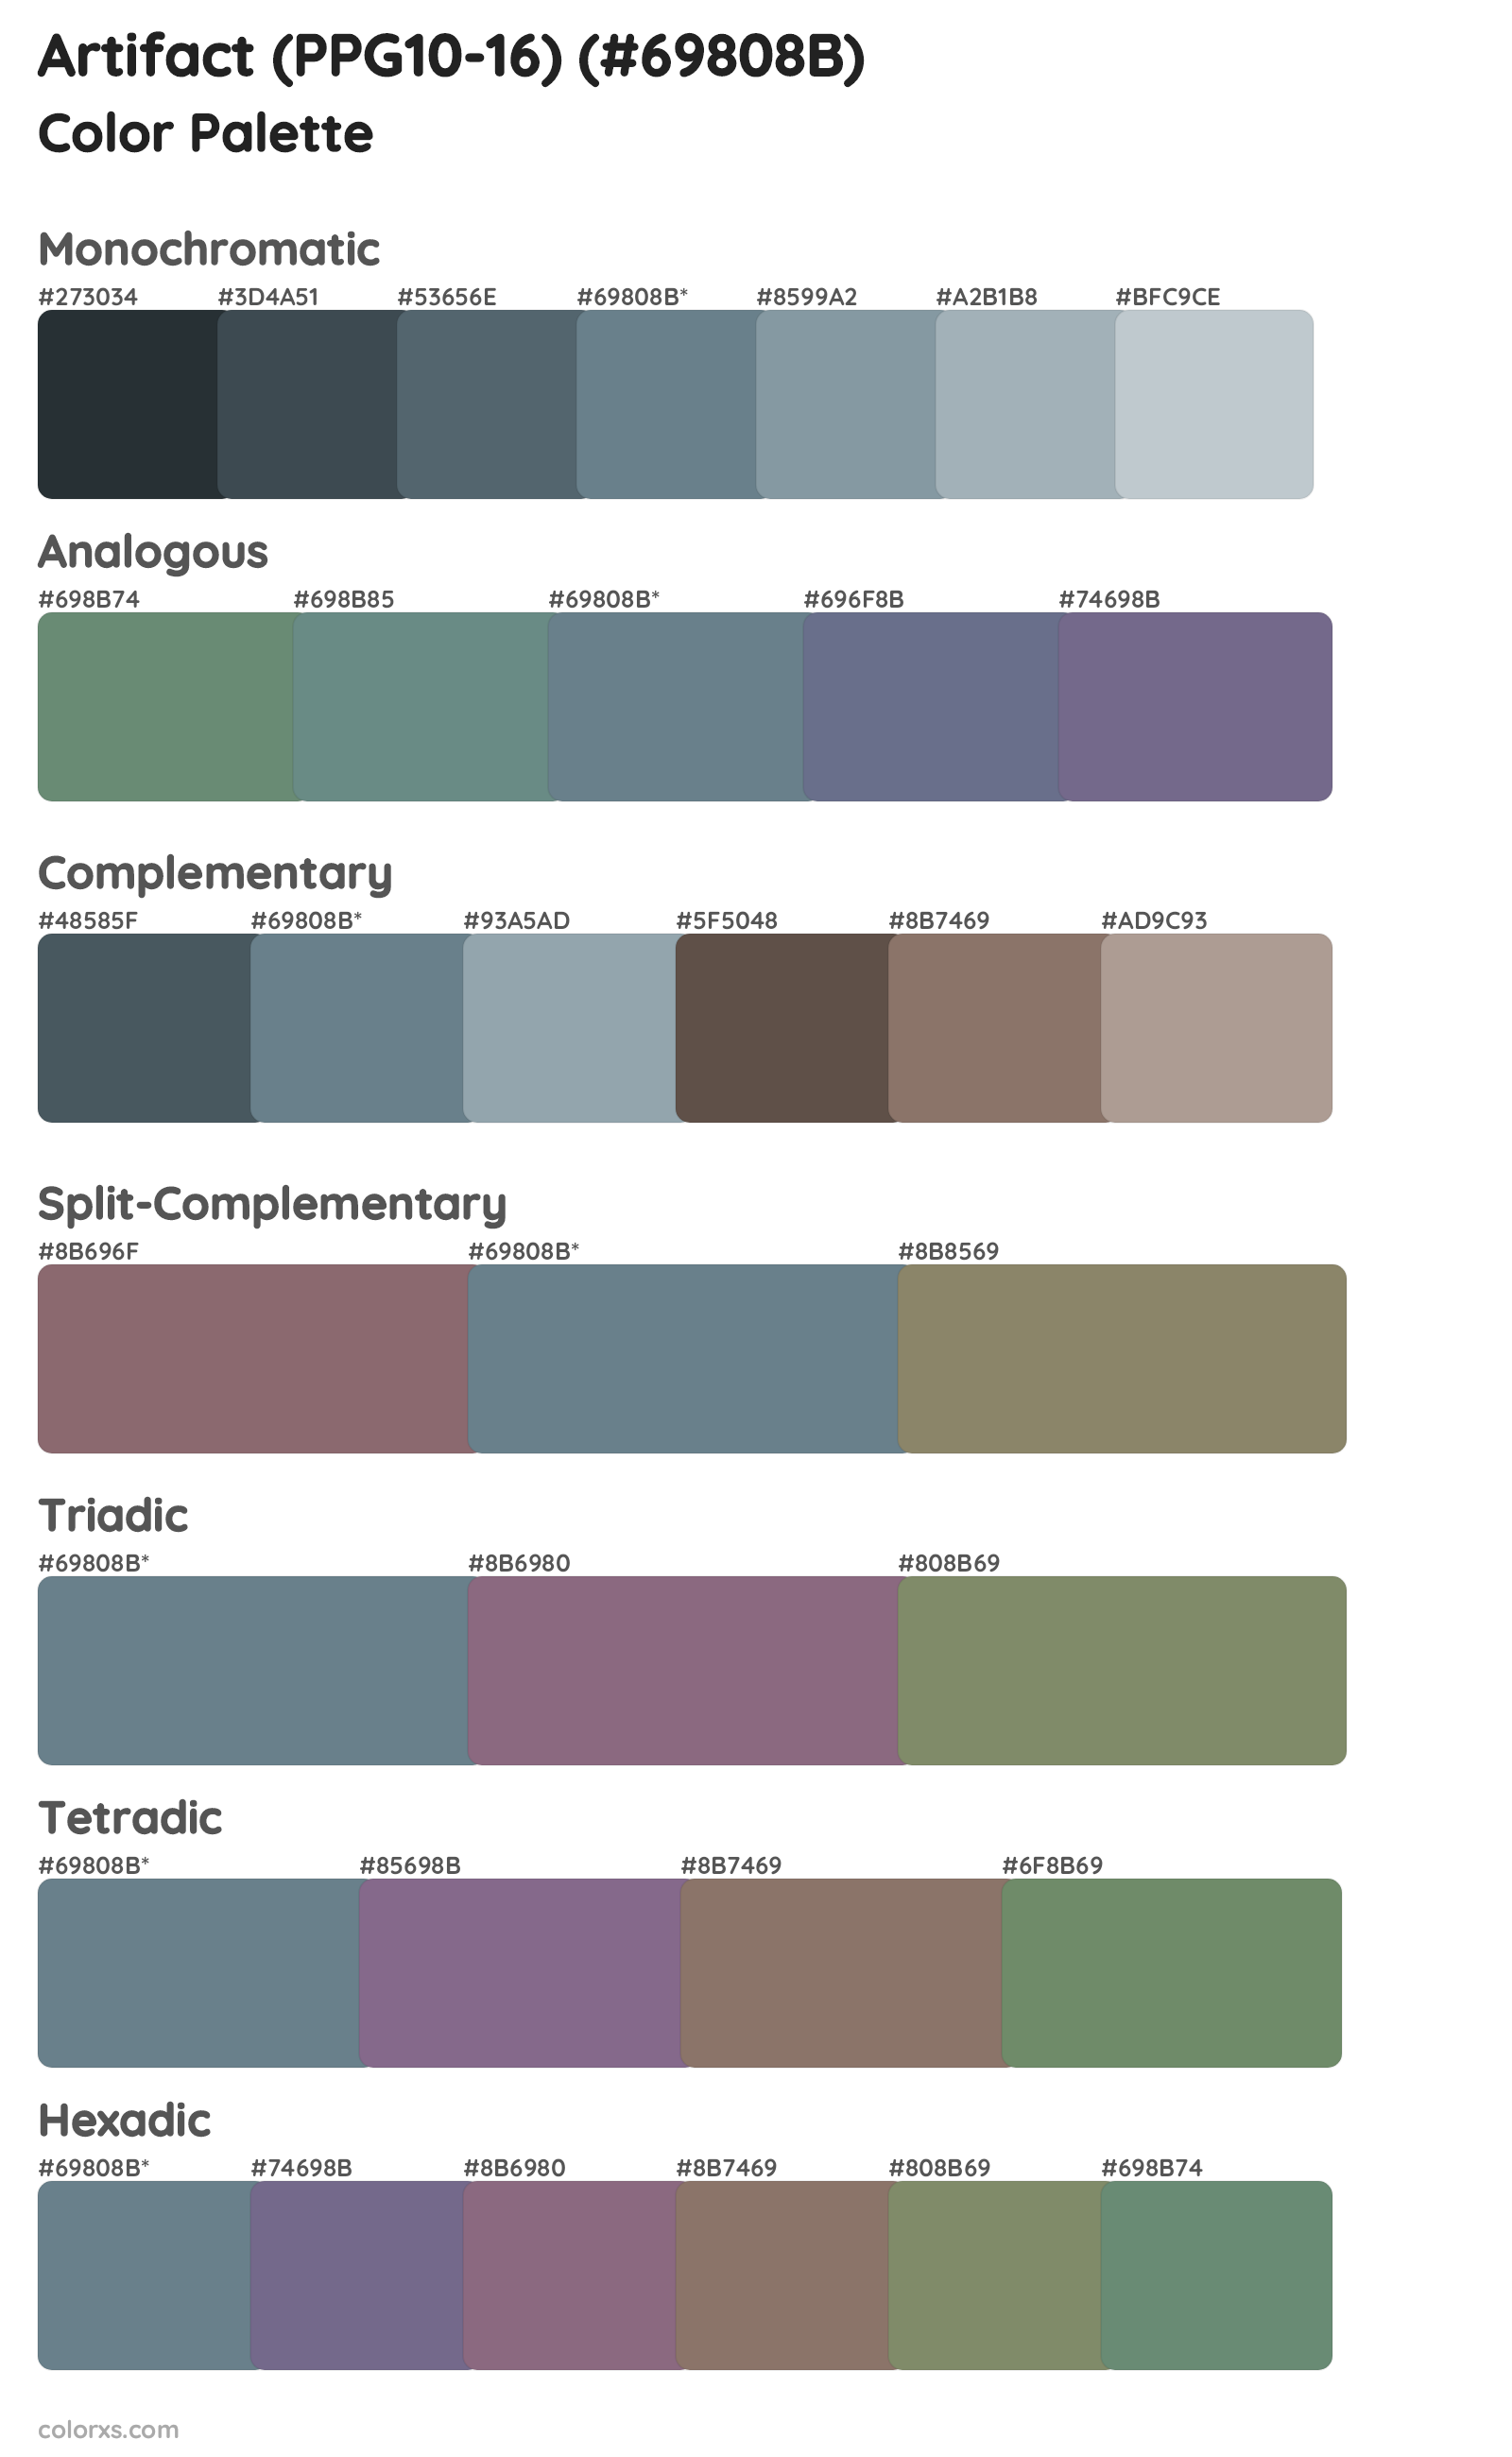 Artifact (PPG10-16) Color Scheme Palettes